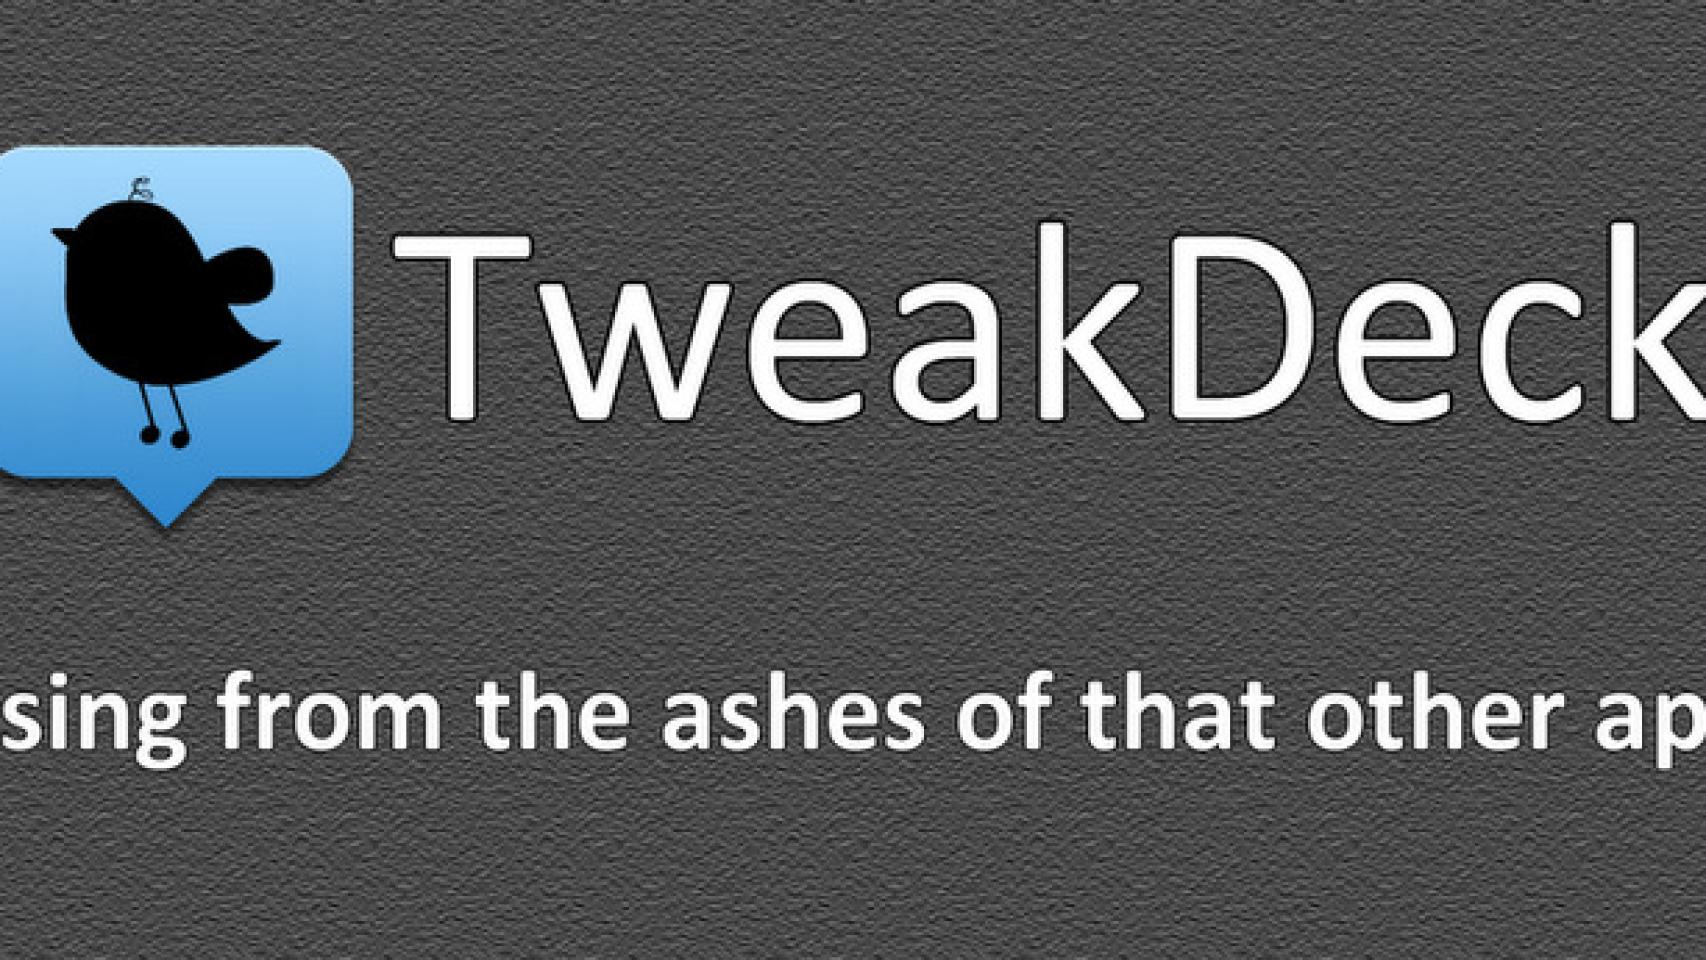 Lo que debería ser Tweetdeck se llama Tweakdeck: Twitter 100% android